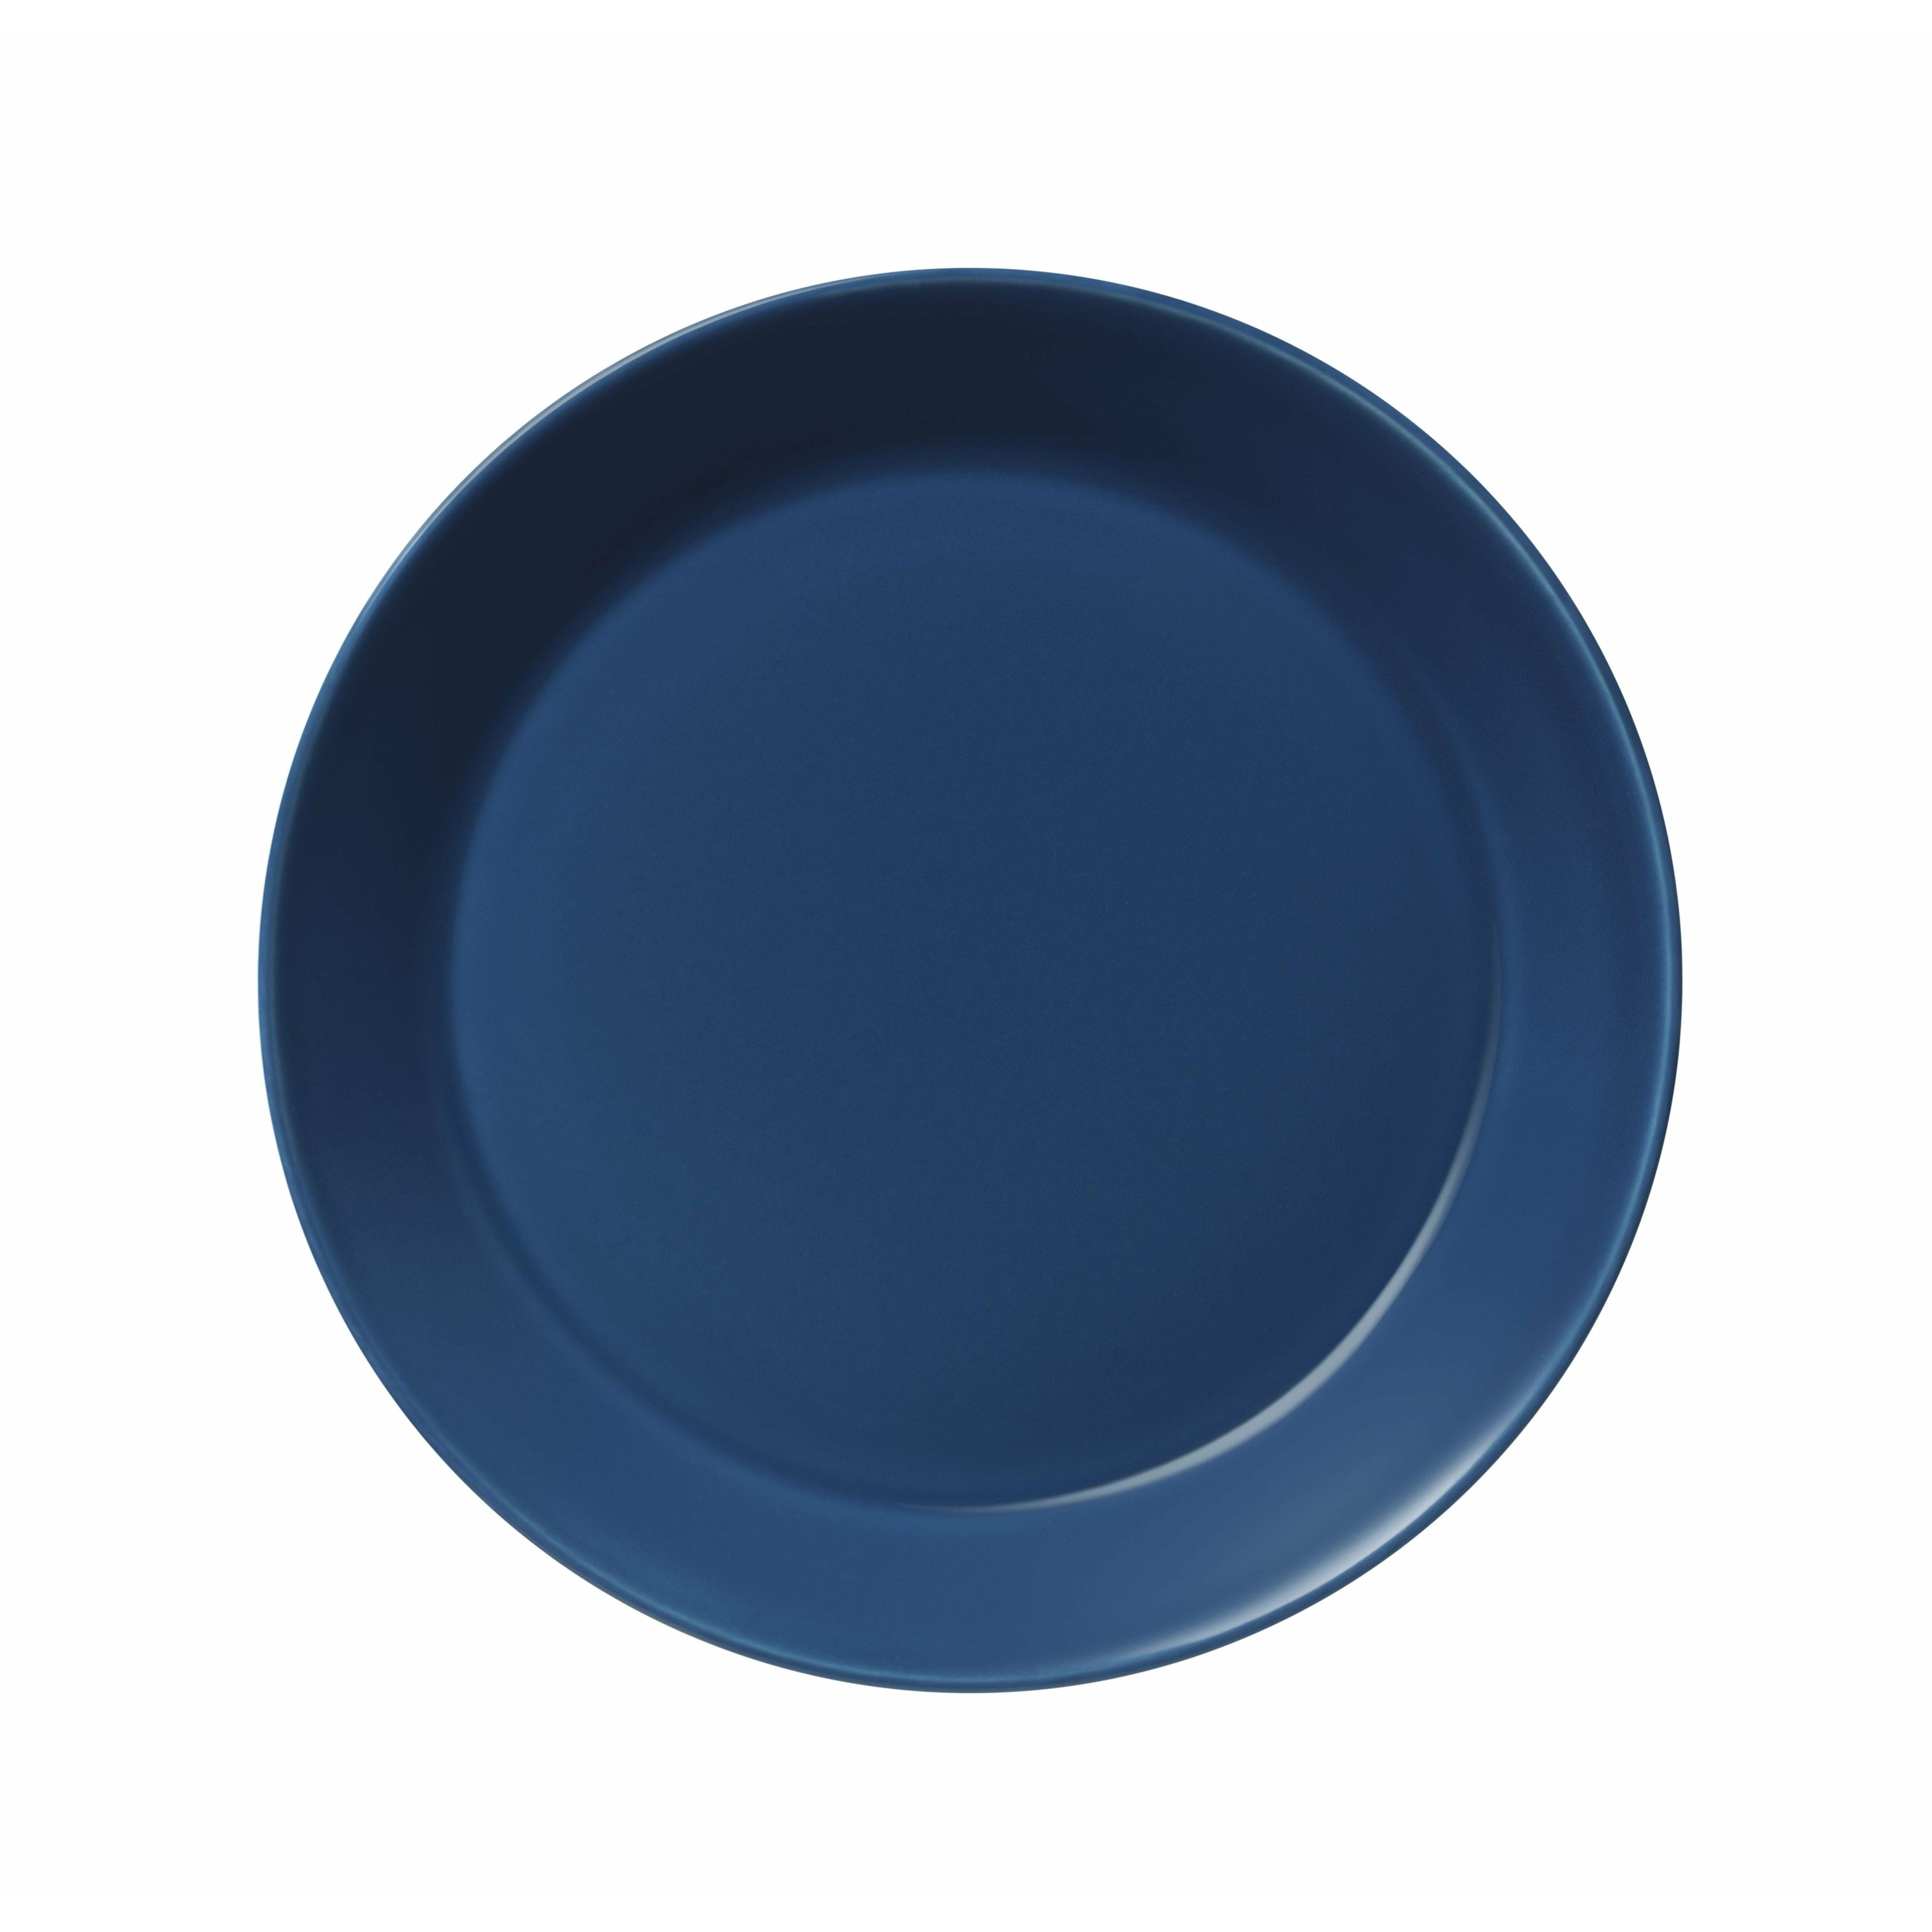 Iittala Teema Plate 21cm, Vintage Blue